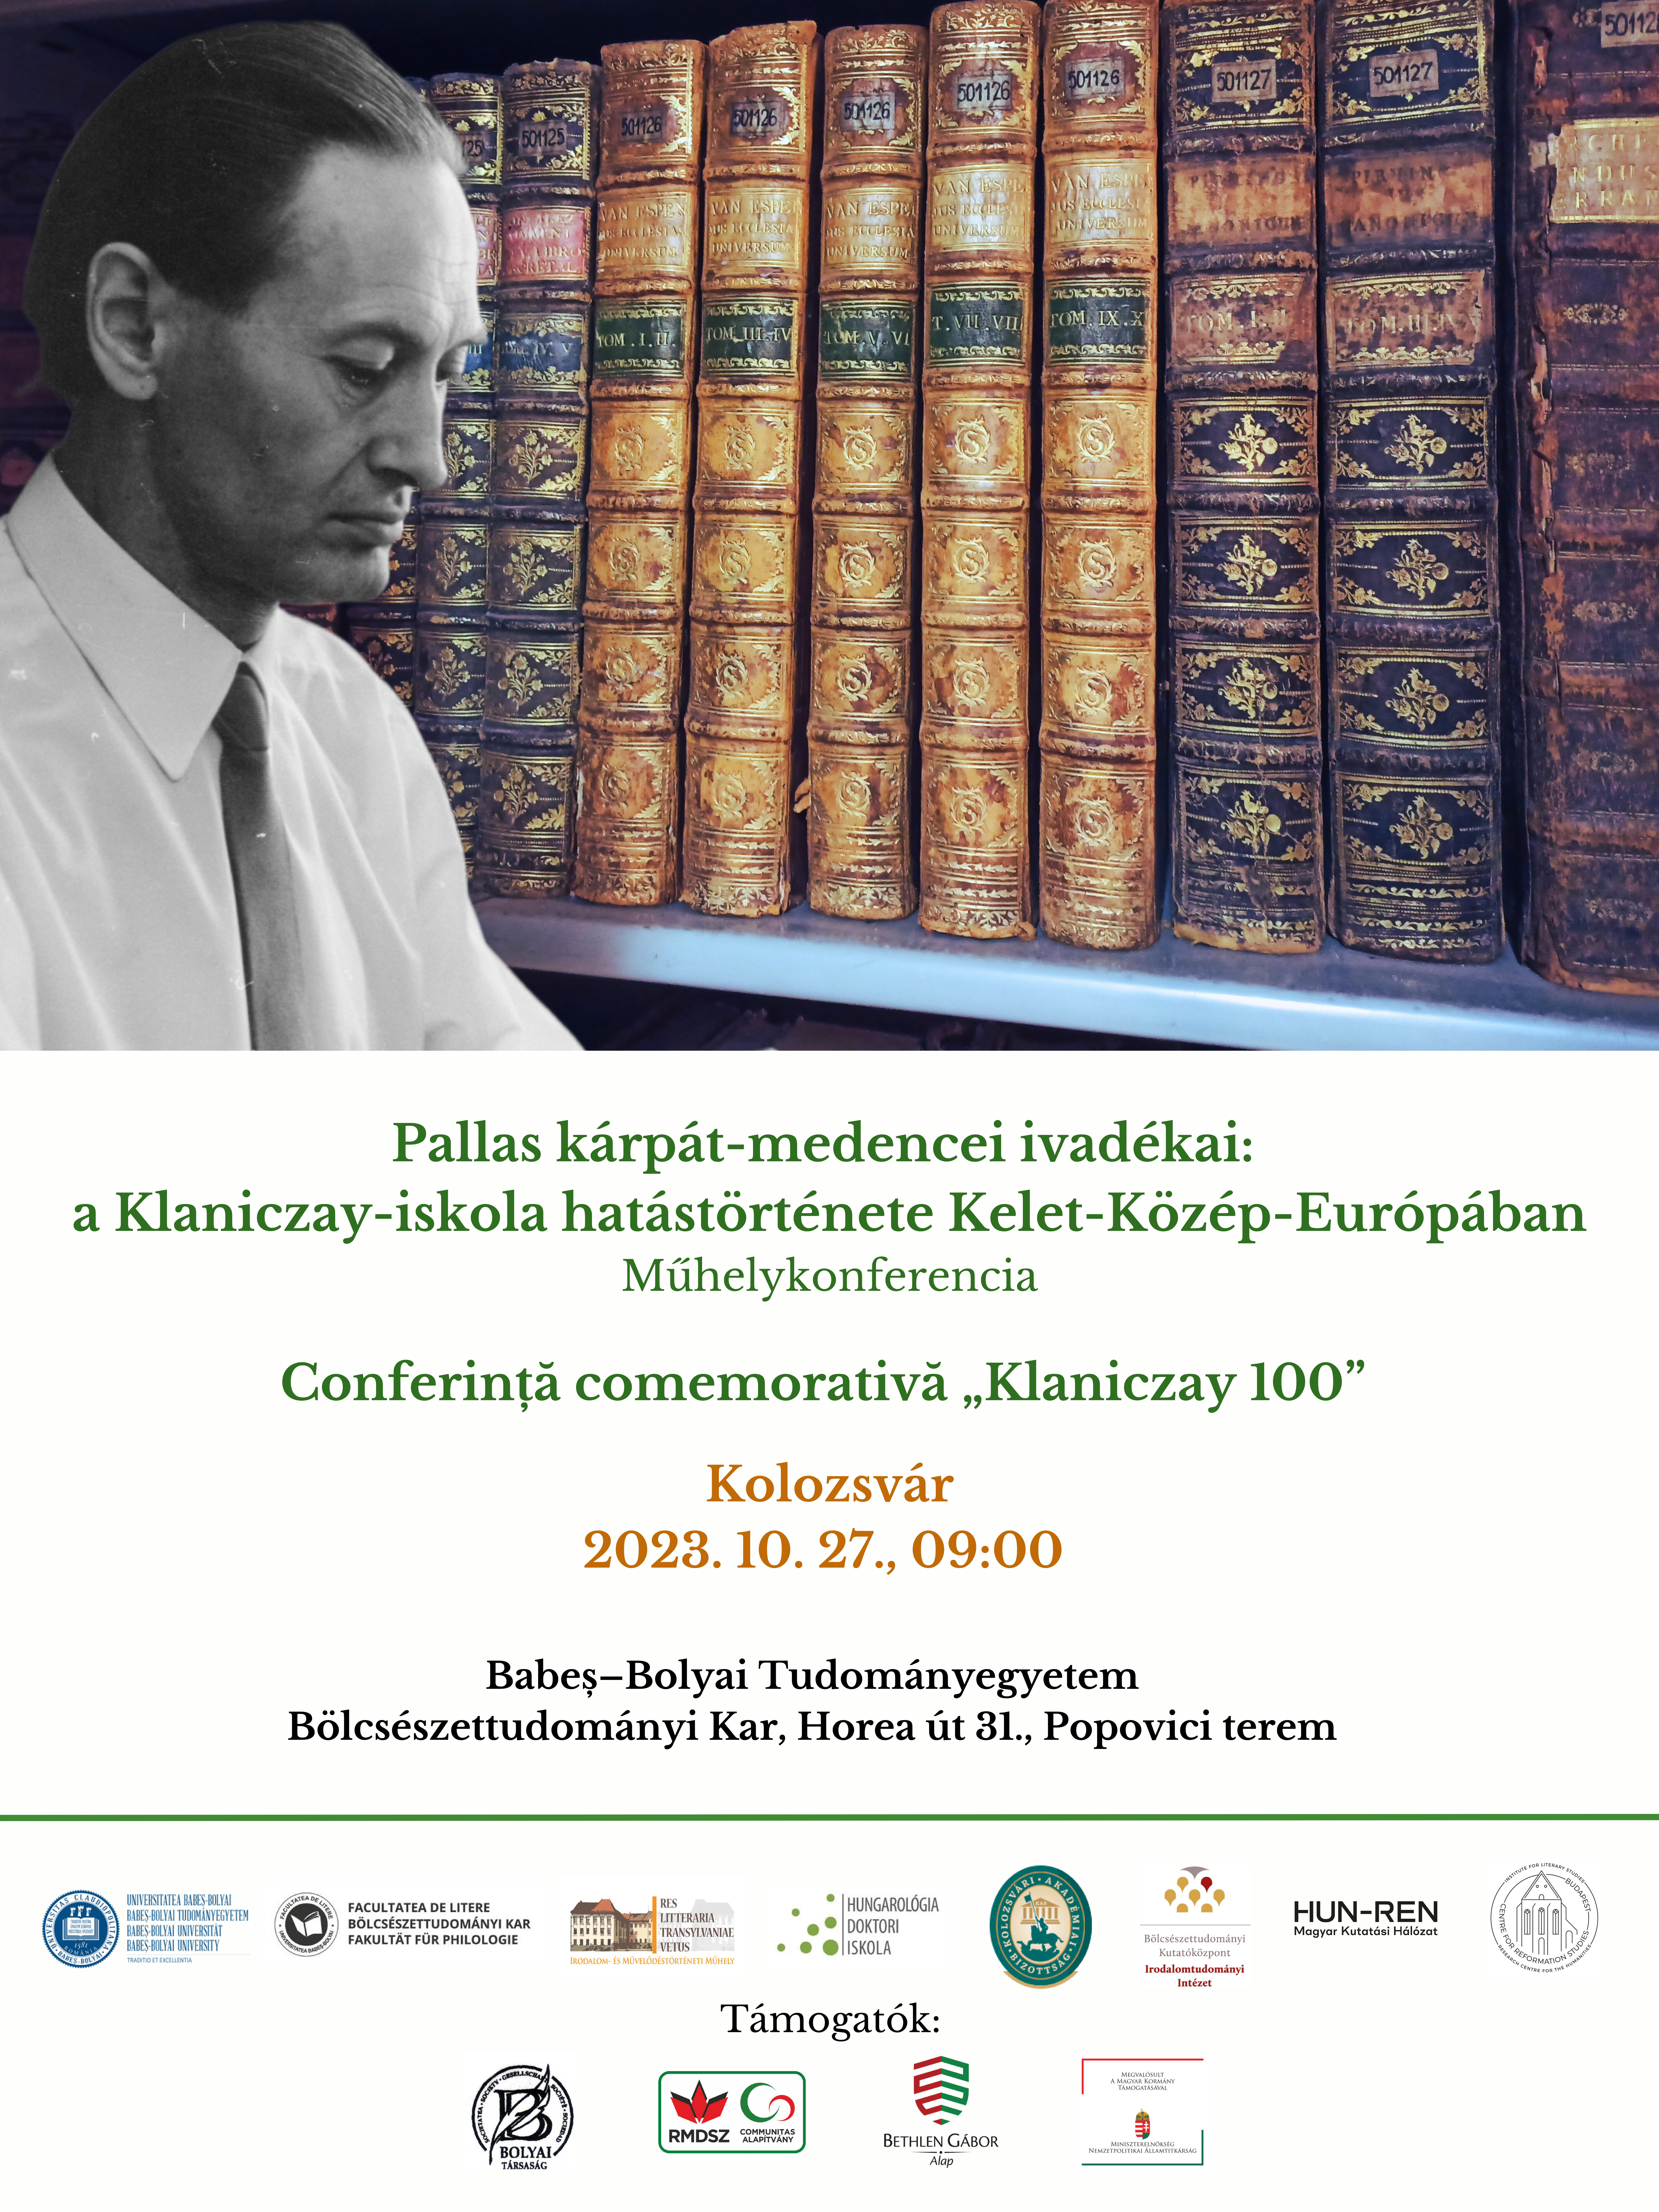 Pallas kárpát-medencei ivadékai – tudományos konferencia Kolozsváron